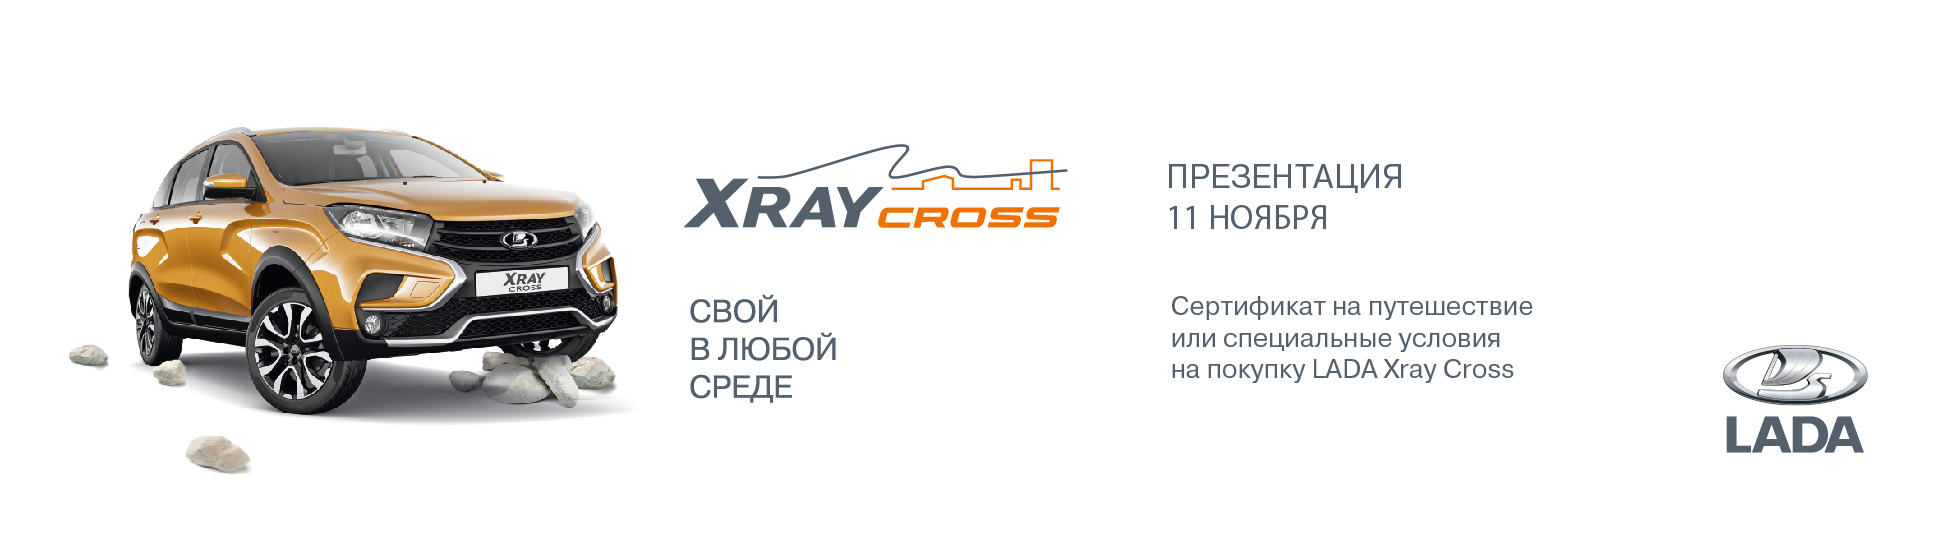 Презентация новой LADA XRAY CROSS - статьи от компании Форсаж